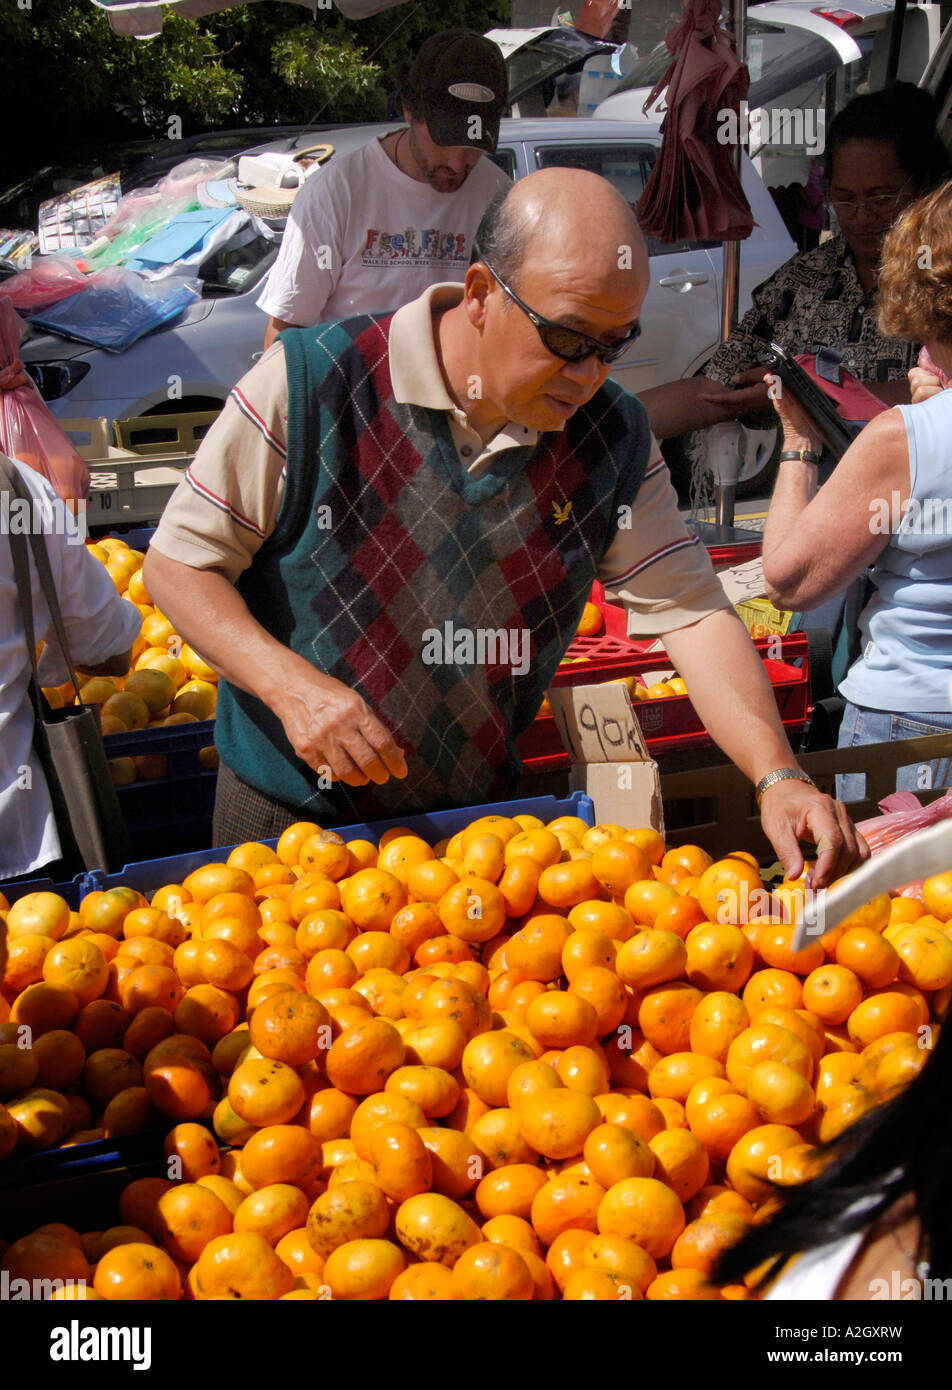 Stallo del mercato proprietario disponendo i tangerini, Takapuna domenica street market, Auckland City North Shore, Nuova Zelanda Gennaio 2007 Foto Stock